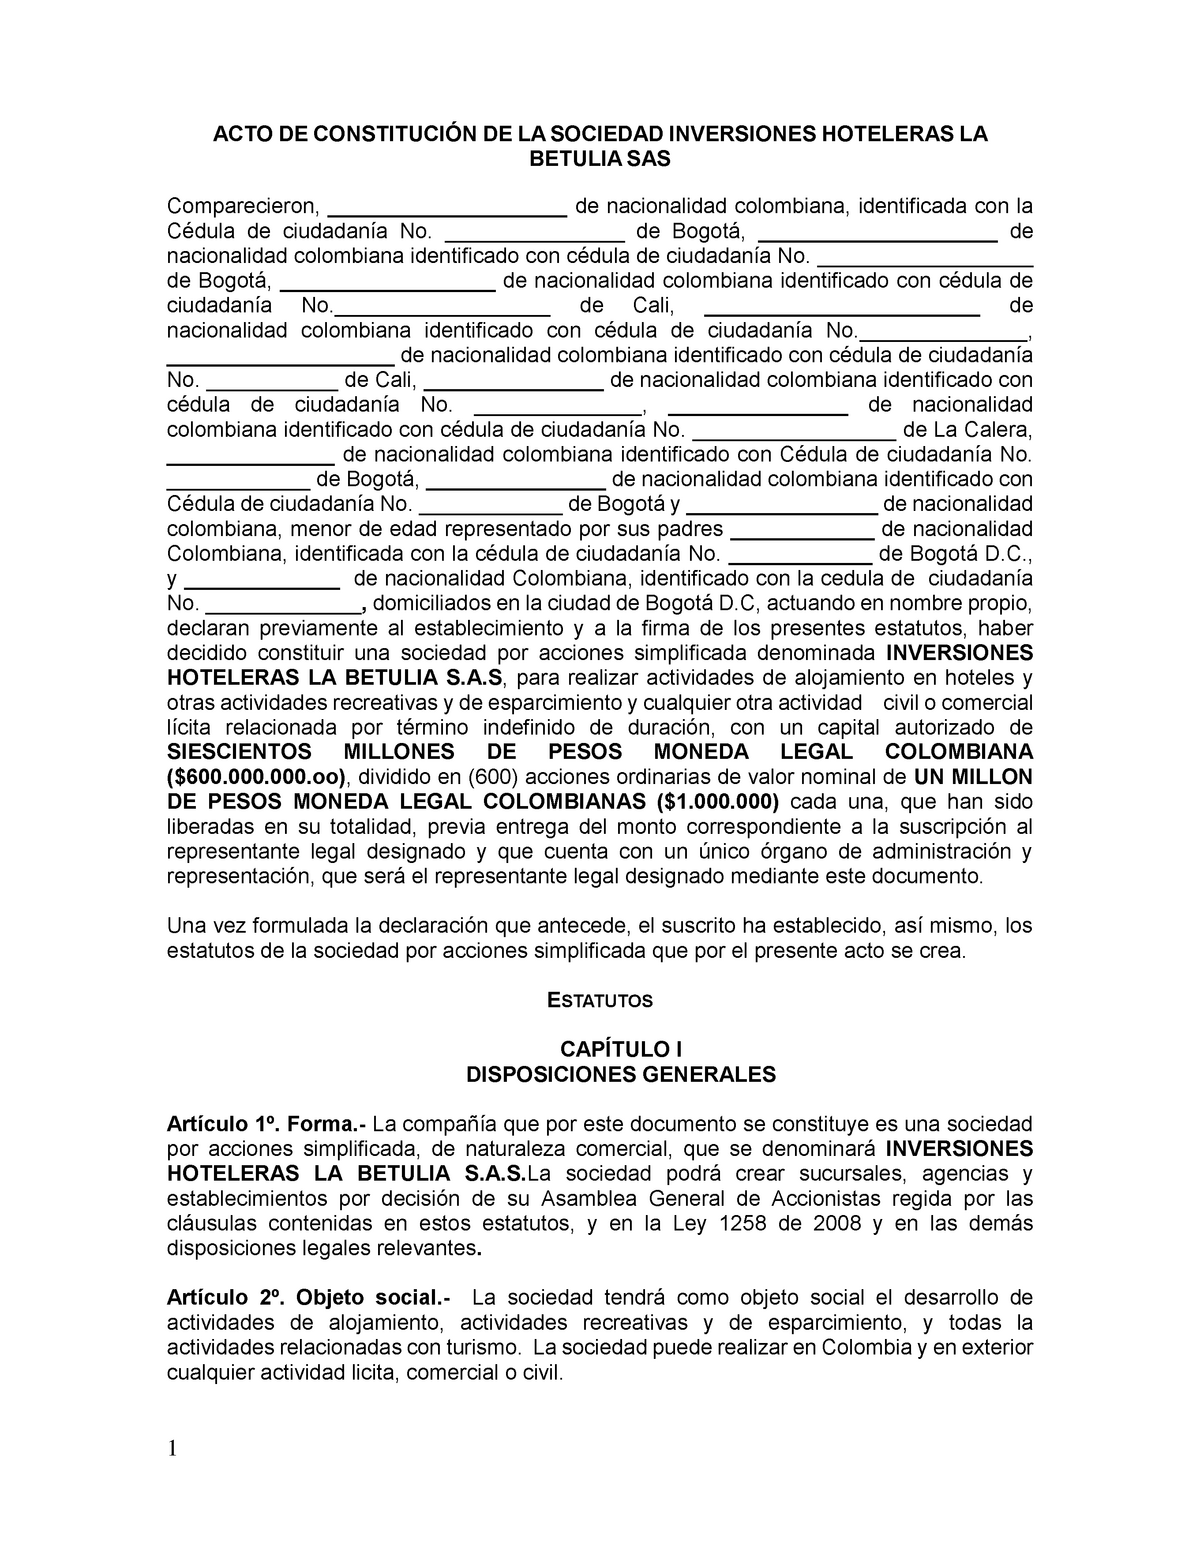 Acta constitución Estatutos - ACTO DE DE LA SOCIEDAD INVERSIONES ...